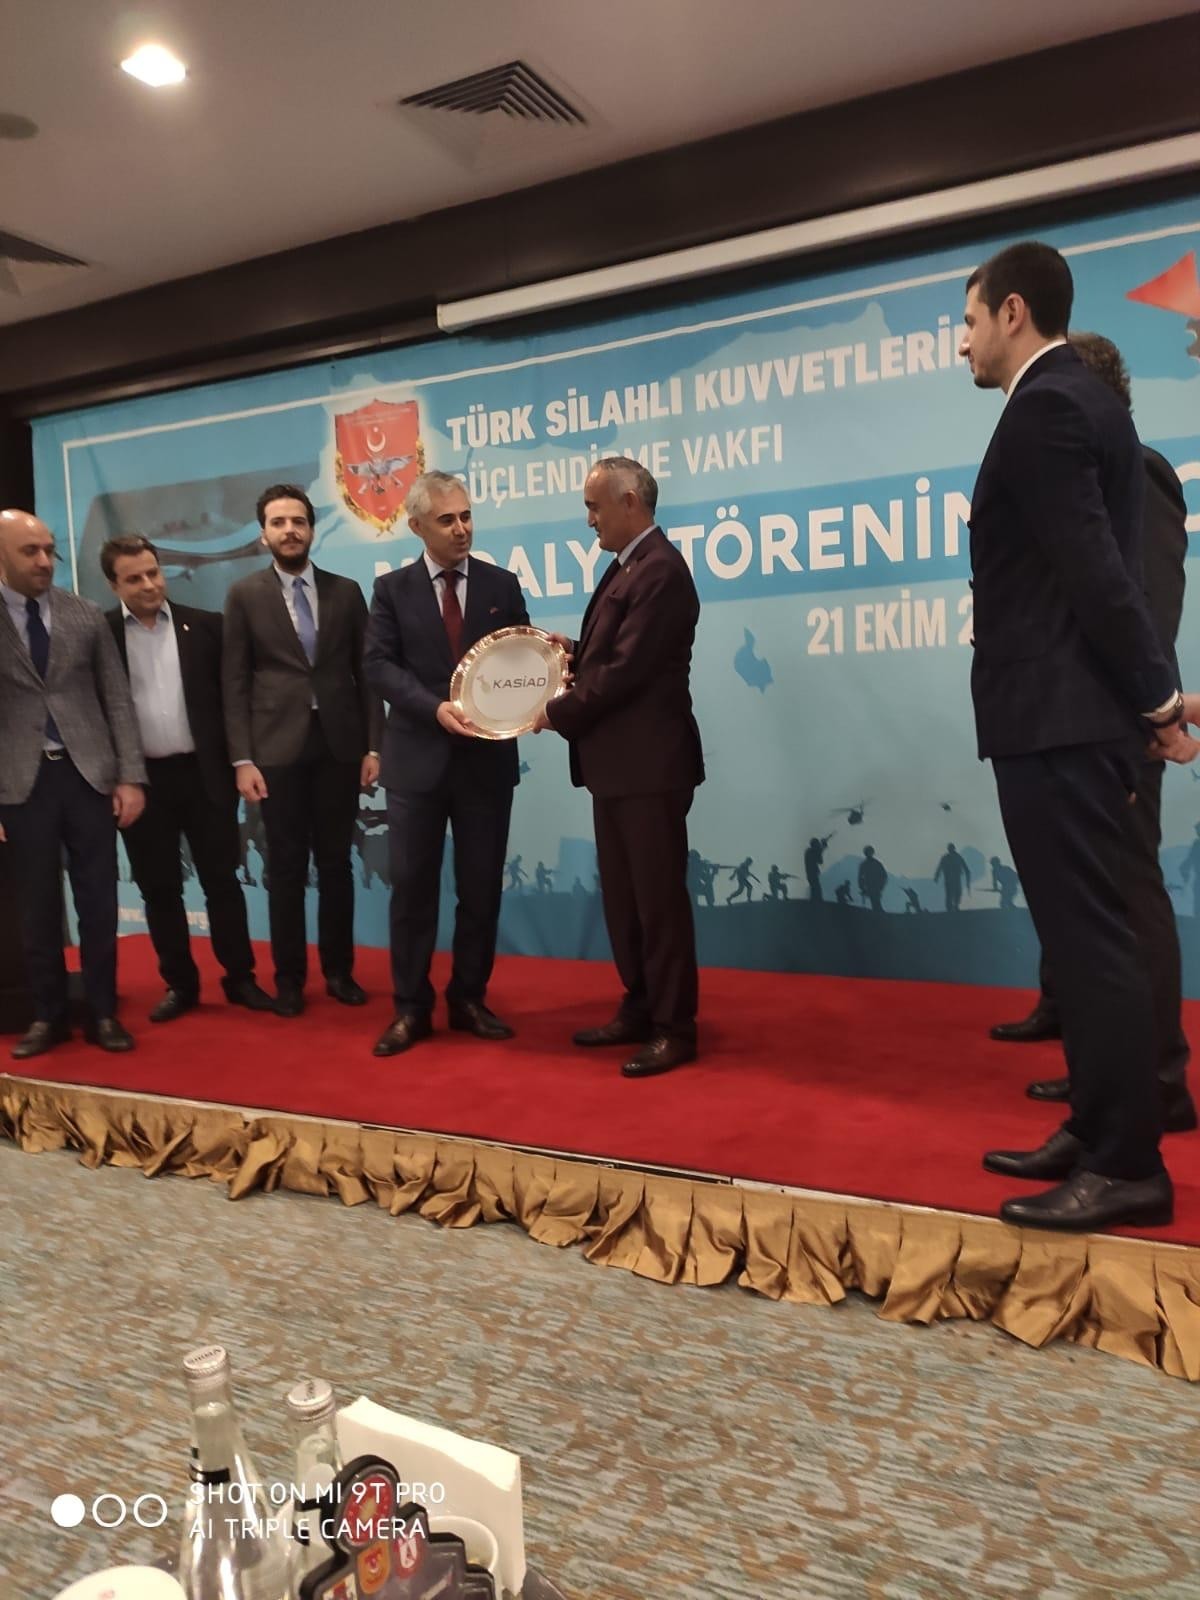 Türk Silahlı Kuvvetlerini Güçlendirme Vakfına Bağış Kampanyası Düzenlenmesi